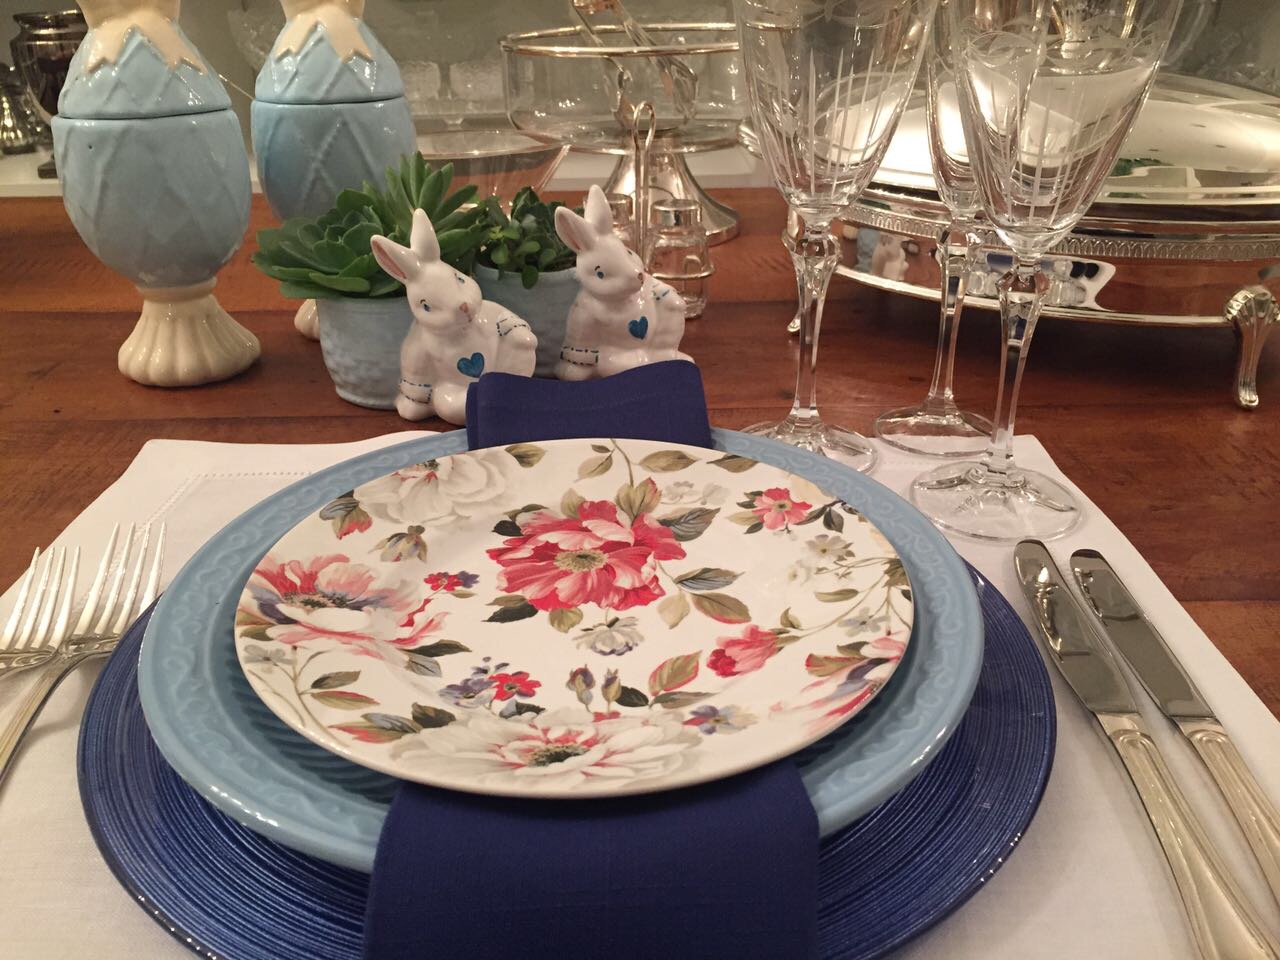 um lugar colocado sobre um sousplat azul claro com pratos rasos de borda azul e sobre ele um prato estampado com flores rosas e vermelhas. Taças de cristal e ovos de porcelana azul ao fundo completam o visual de páscoa.